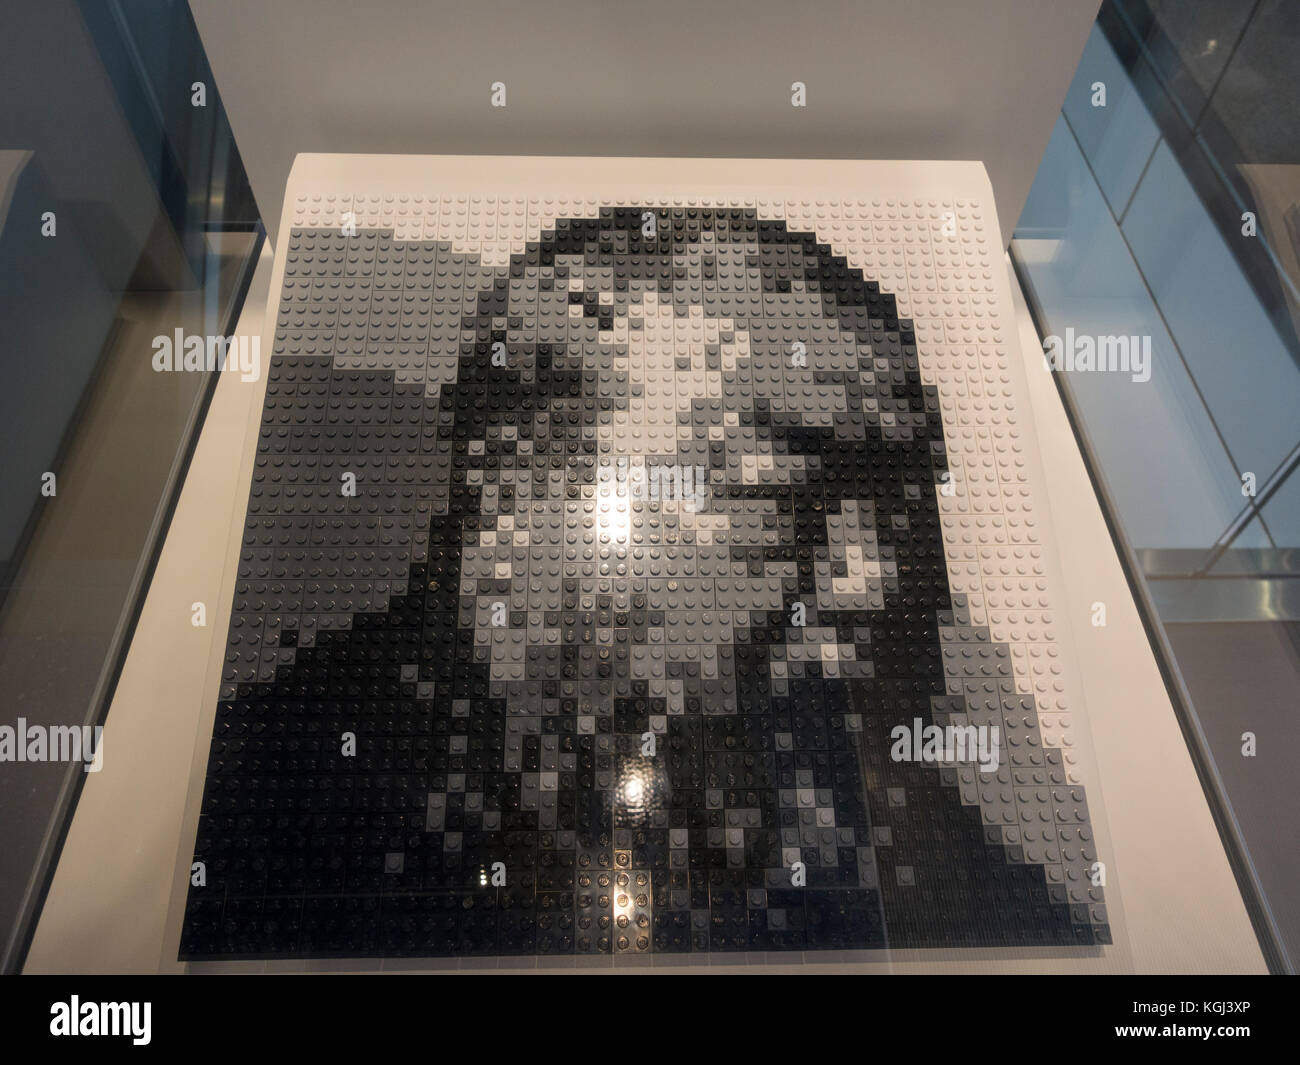 Self Portrait en lego de l'artiste Ai Weiwei exposées dans Newseum, un musée interactif à Washington DC, United States. Banque D'Images